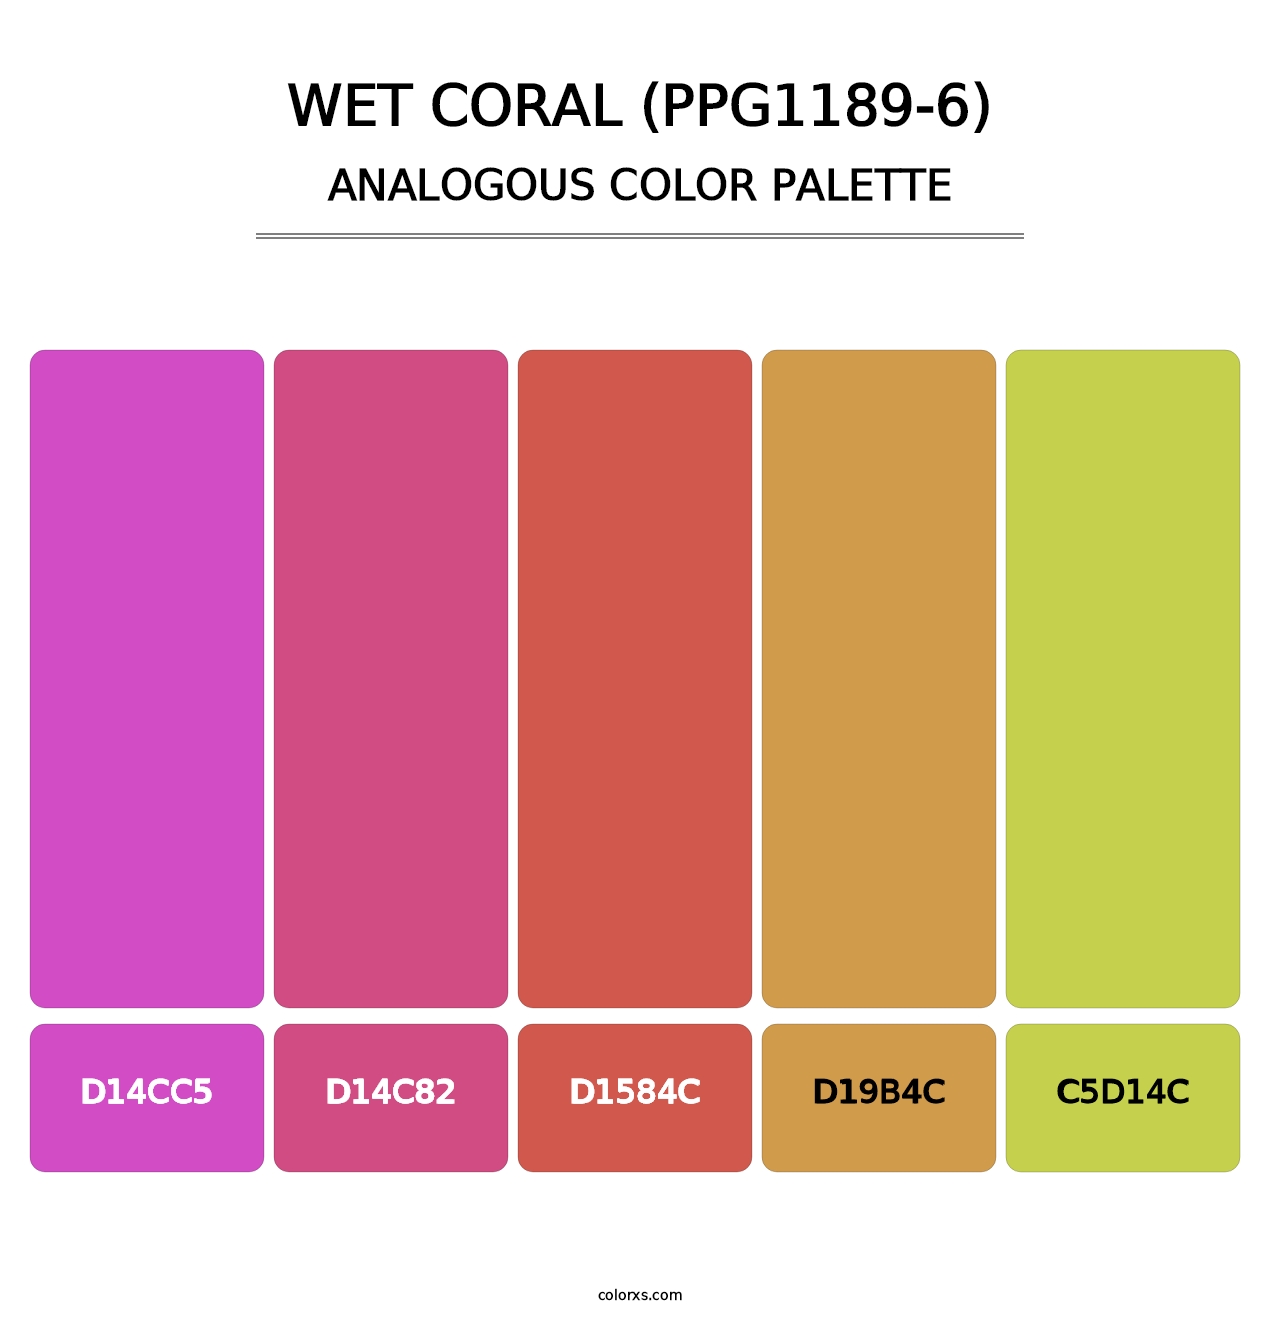 Wet Coral (PPG1189-6) - Analogous Color Palette